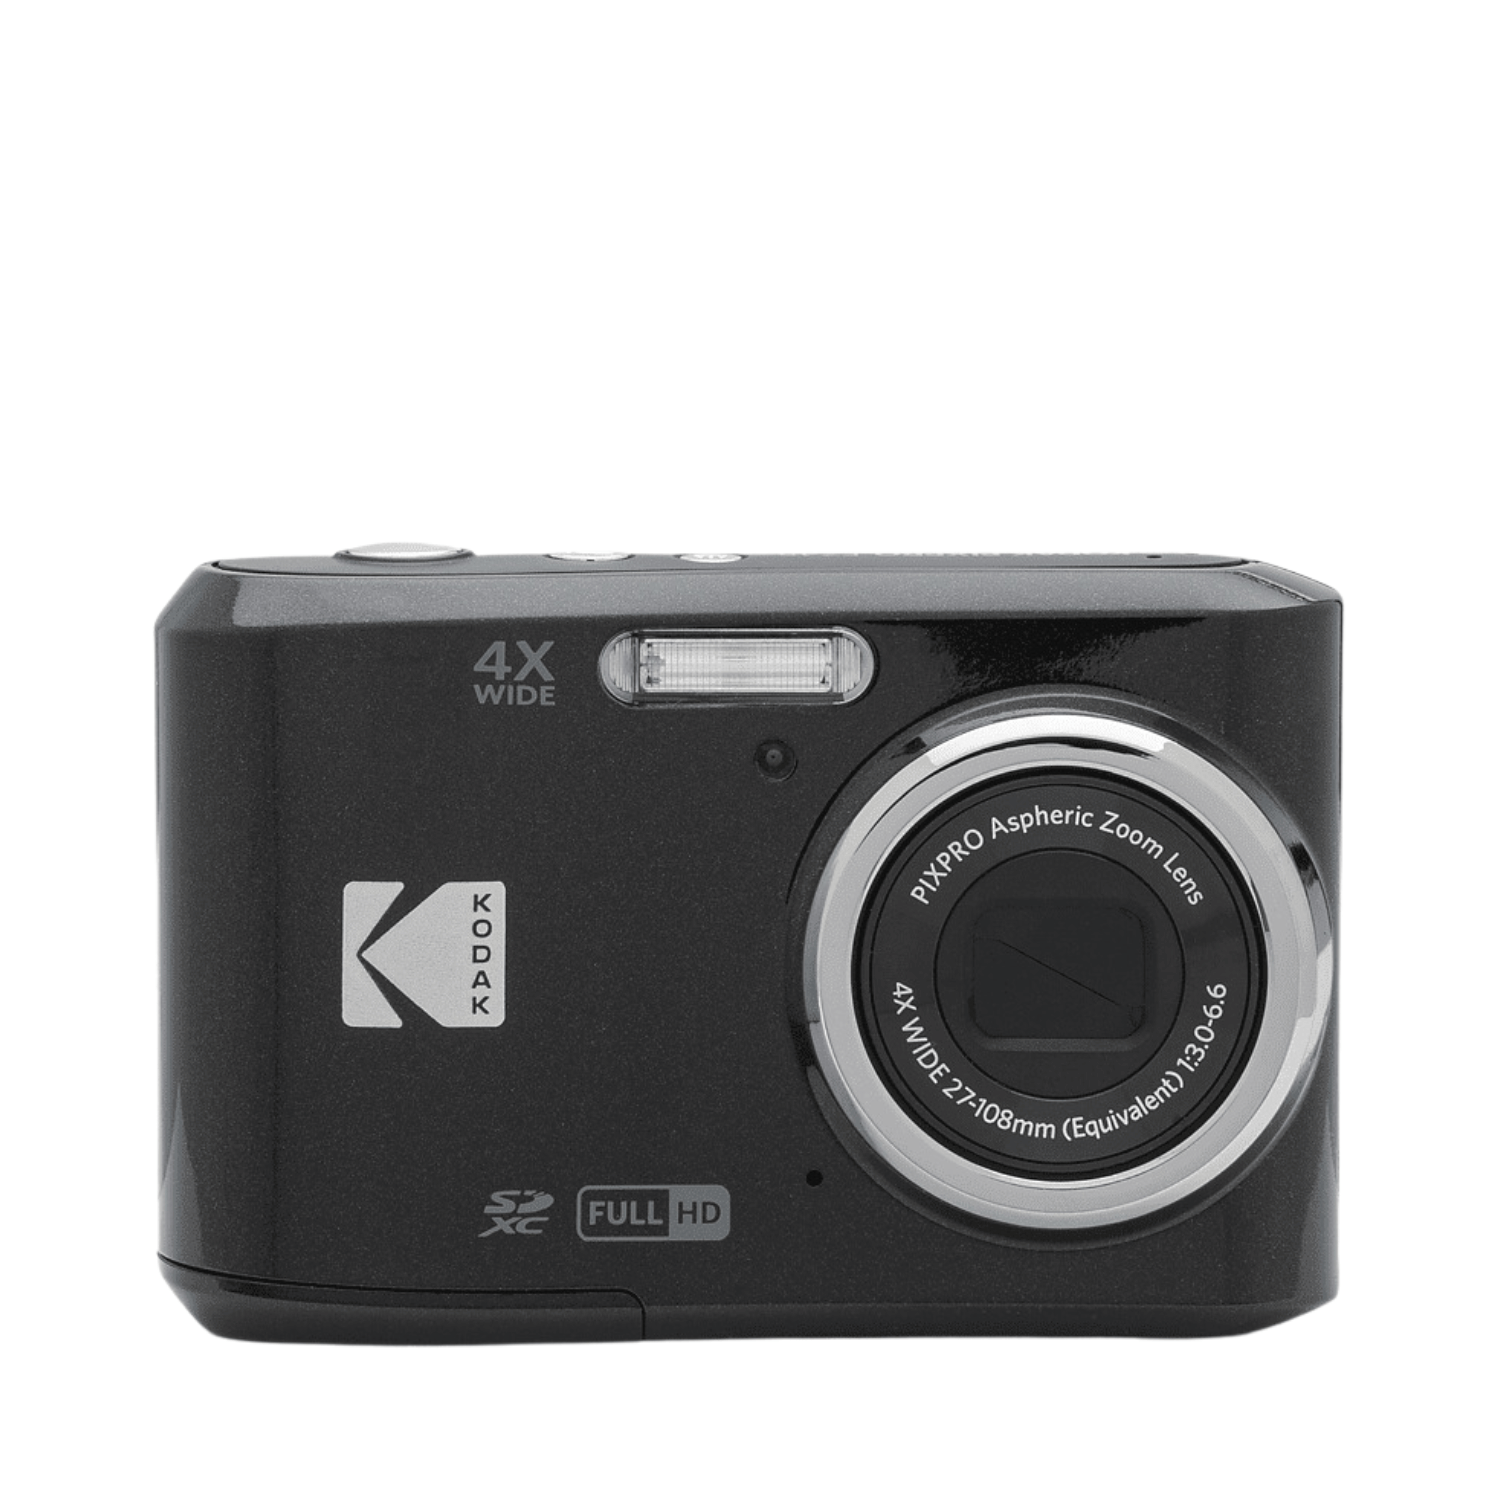 Kodak Pixpro fz43 - Cine Sud è da 47 anni sul mercato!